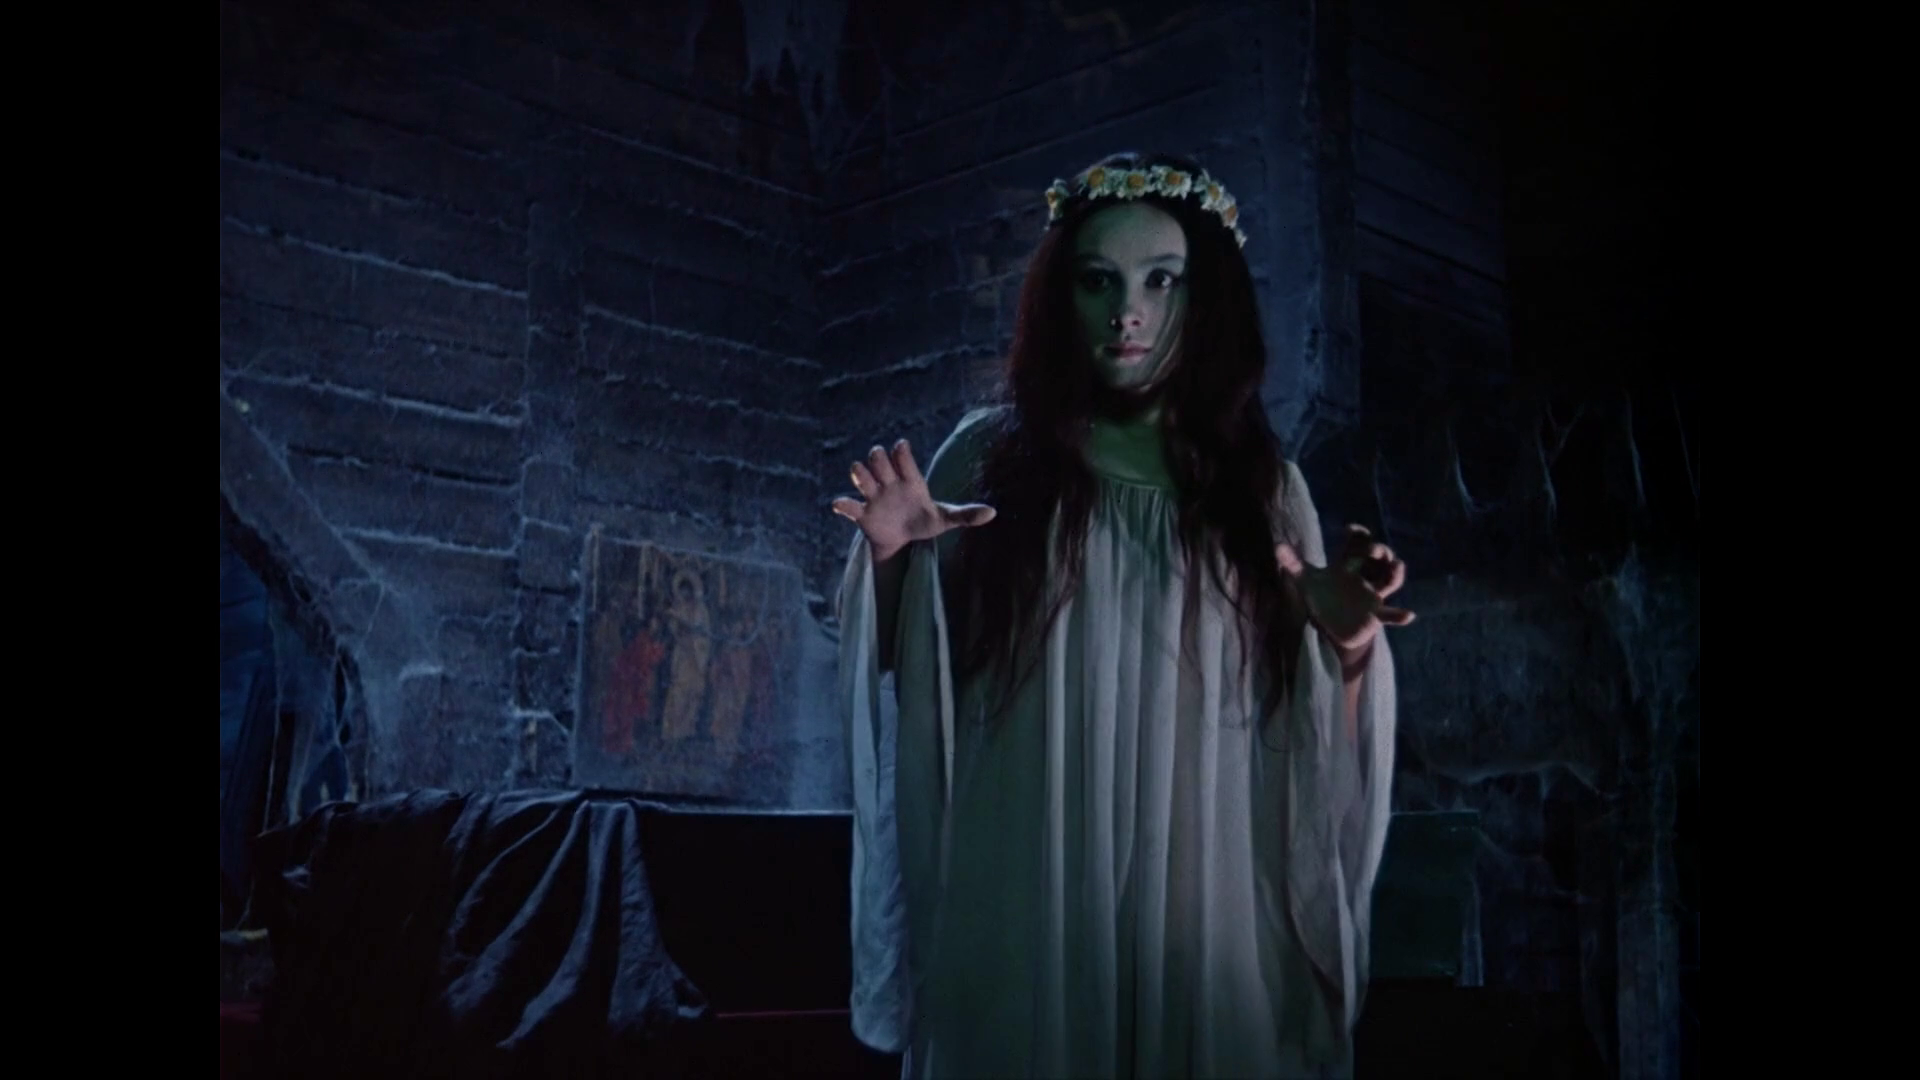 Still from folk horror film, "VIY" (Soviet Union, 1967)